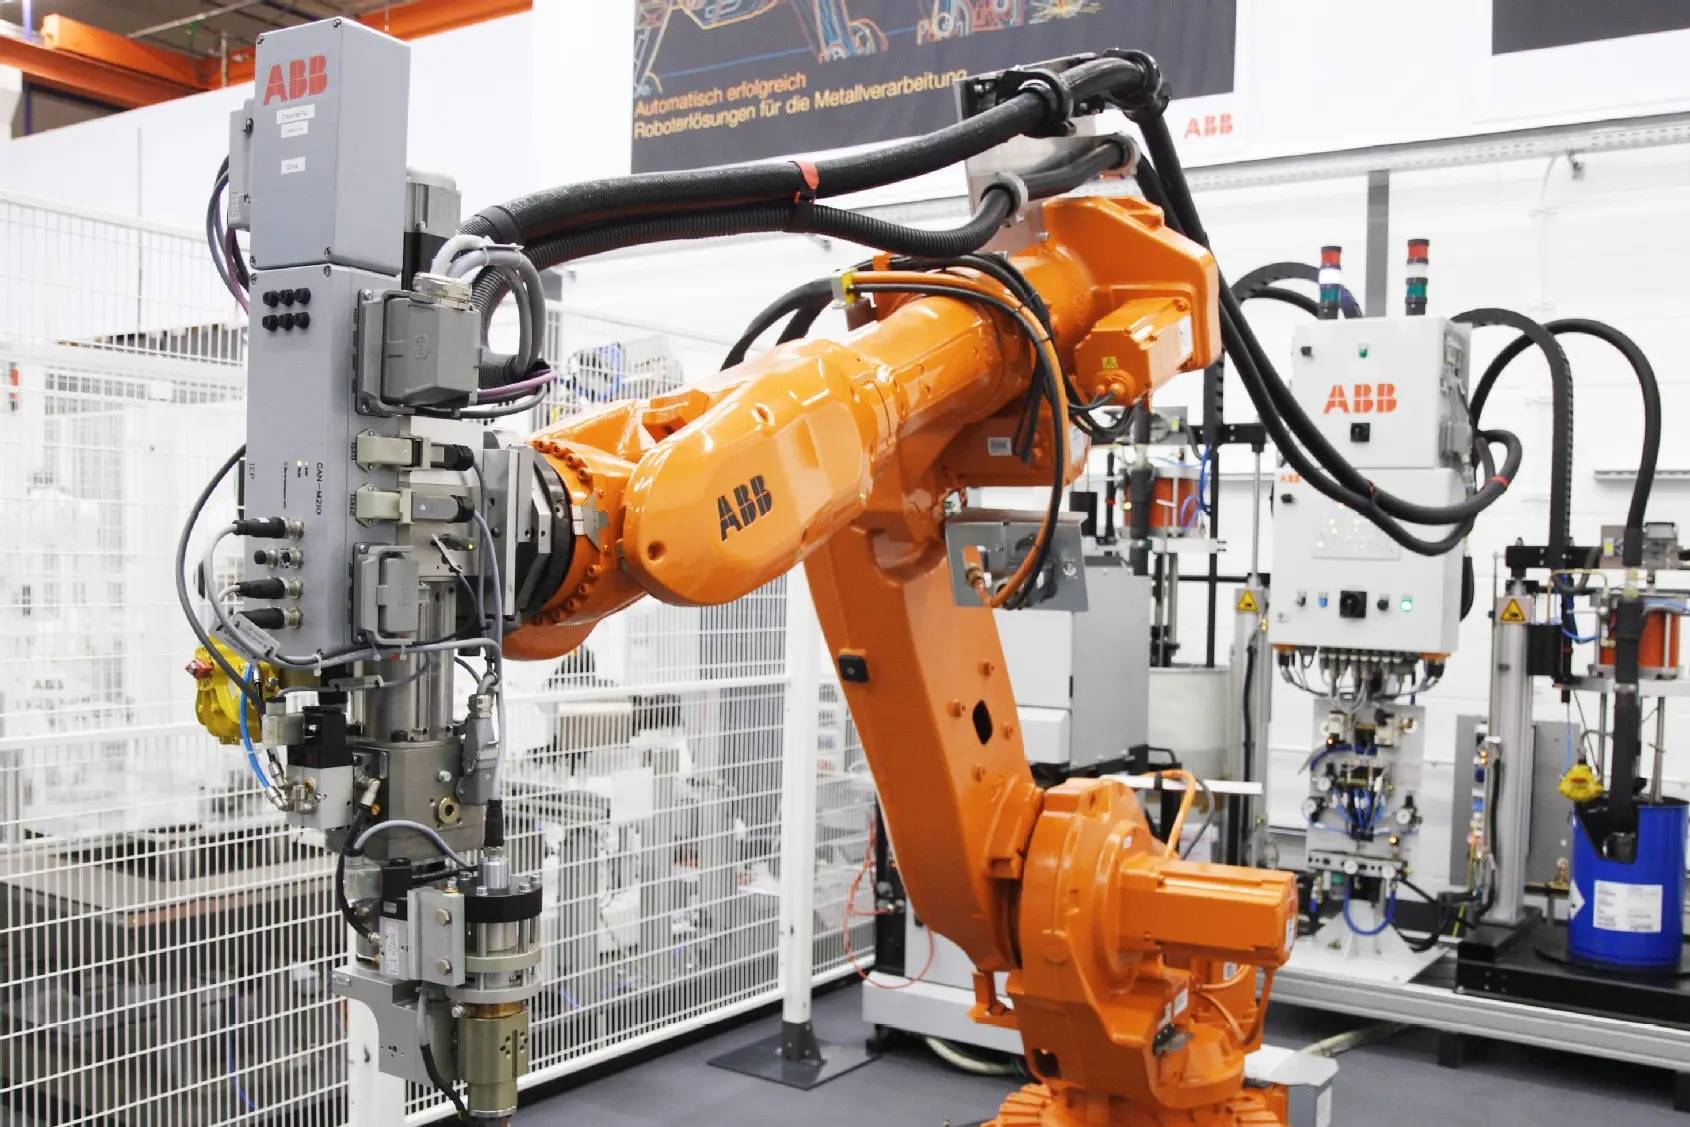 工业机器人在智能制造业中的应用